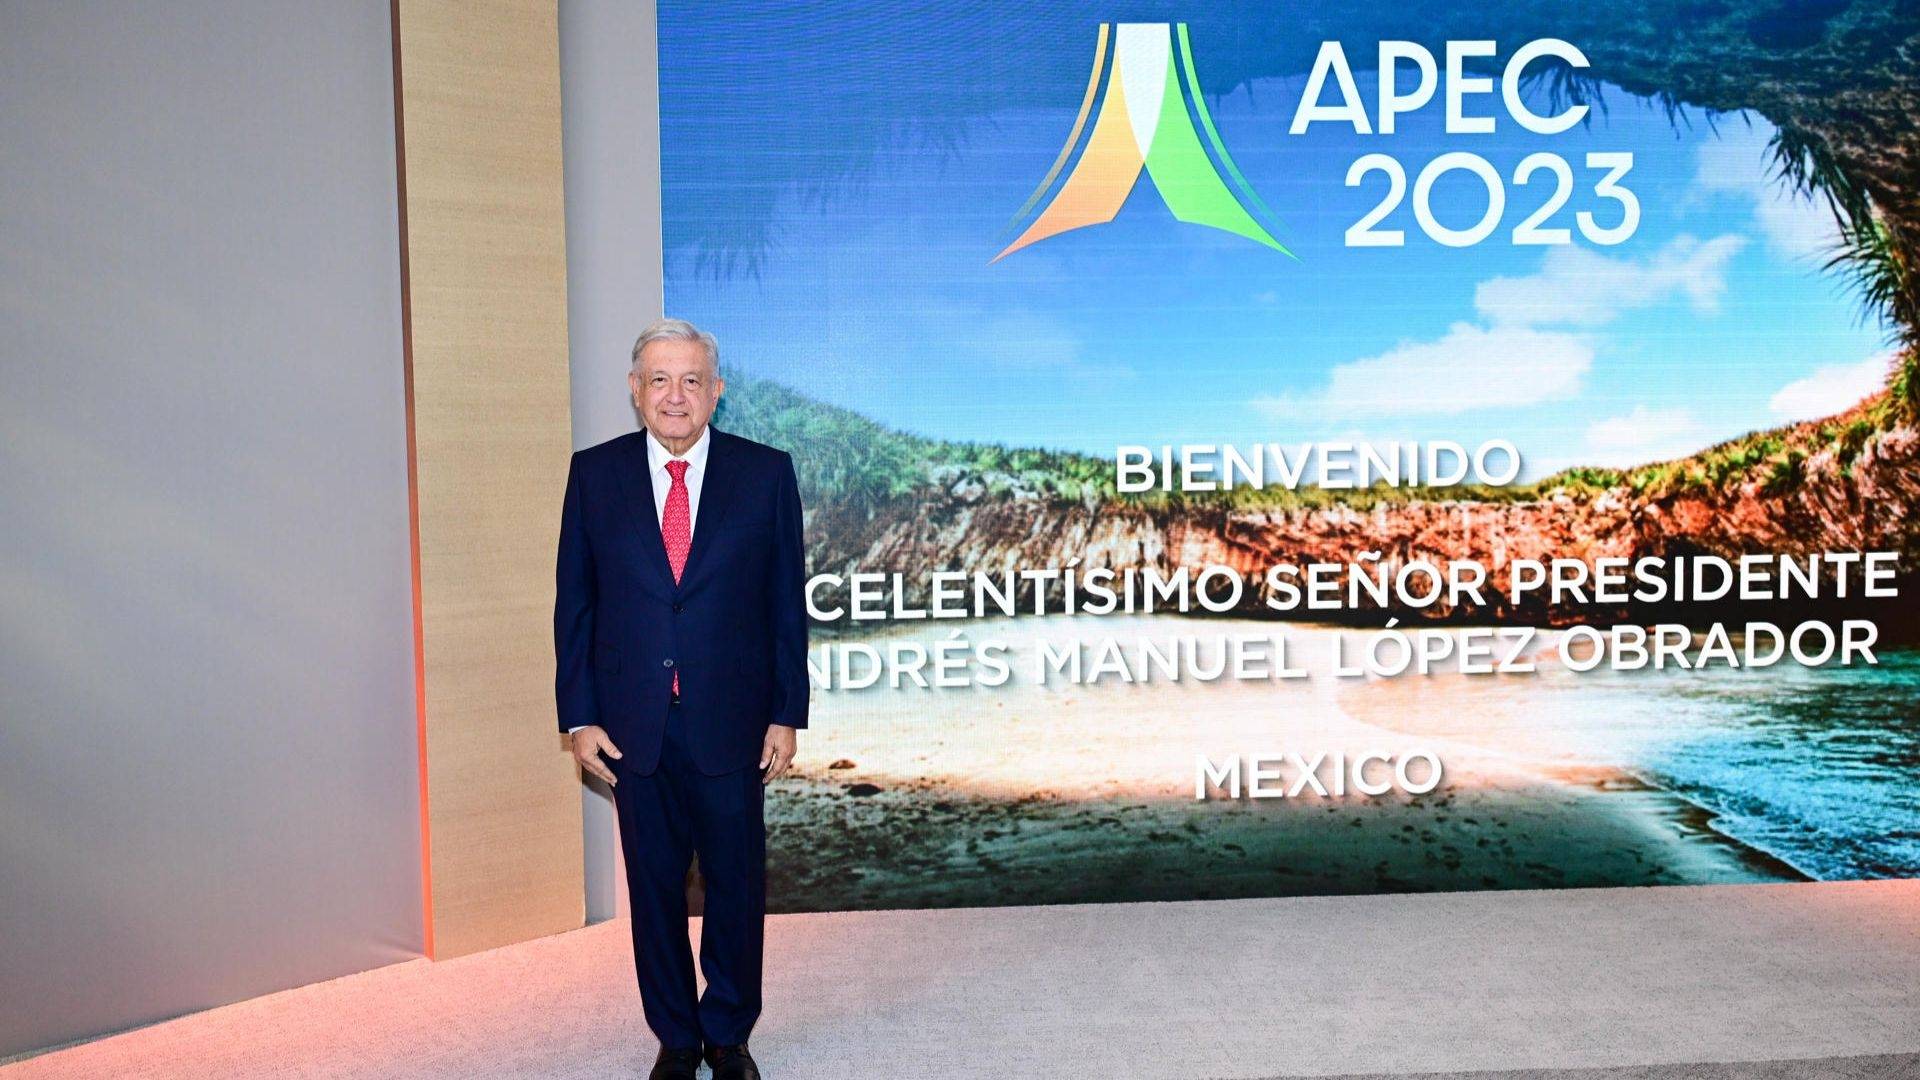 El presidente López Obrador asistió al Foro de Cooperación Económica Asia-Pacífico en San Francisco. Foto: EFE